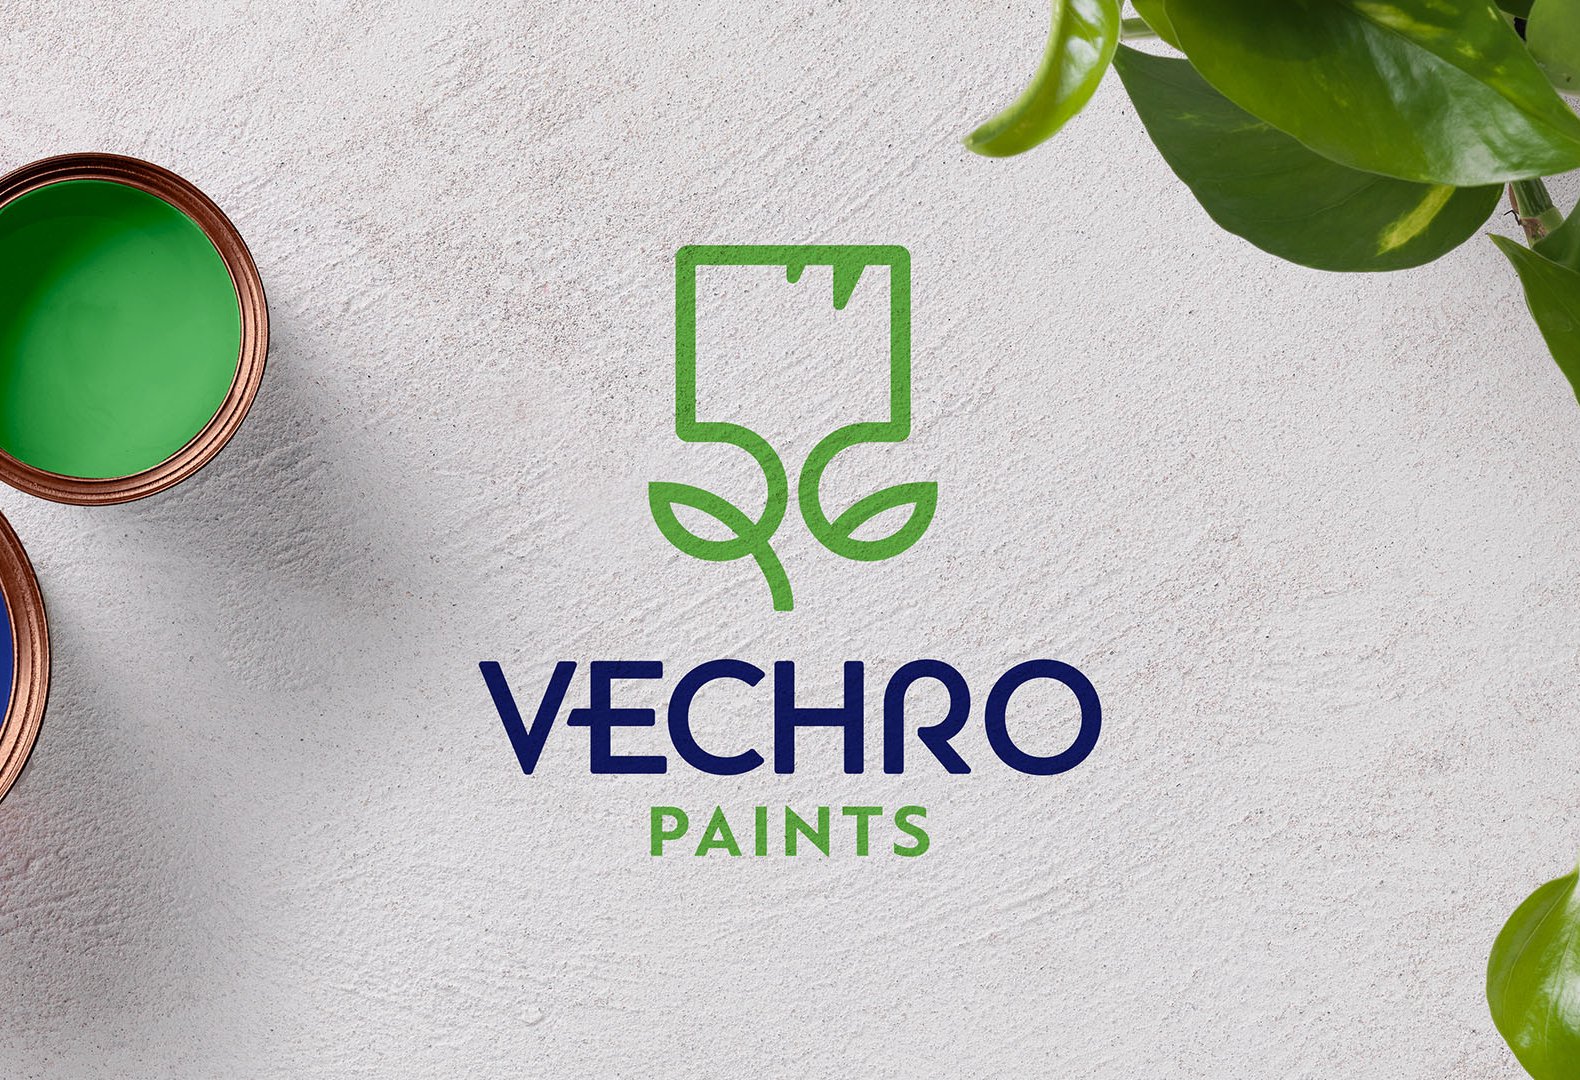 Vechro paints logo redesign